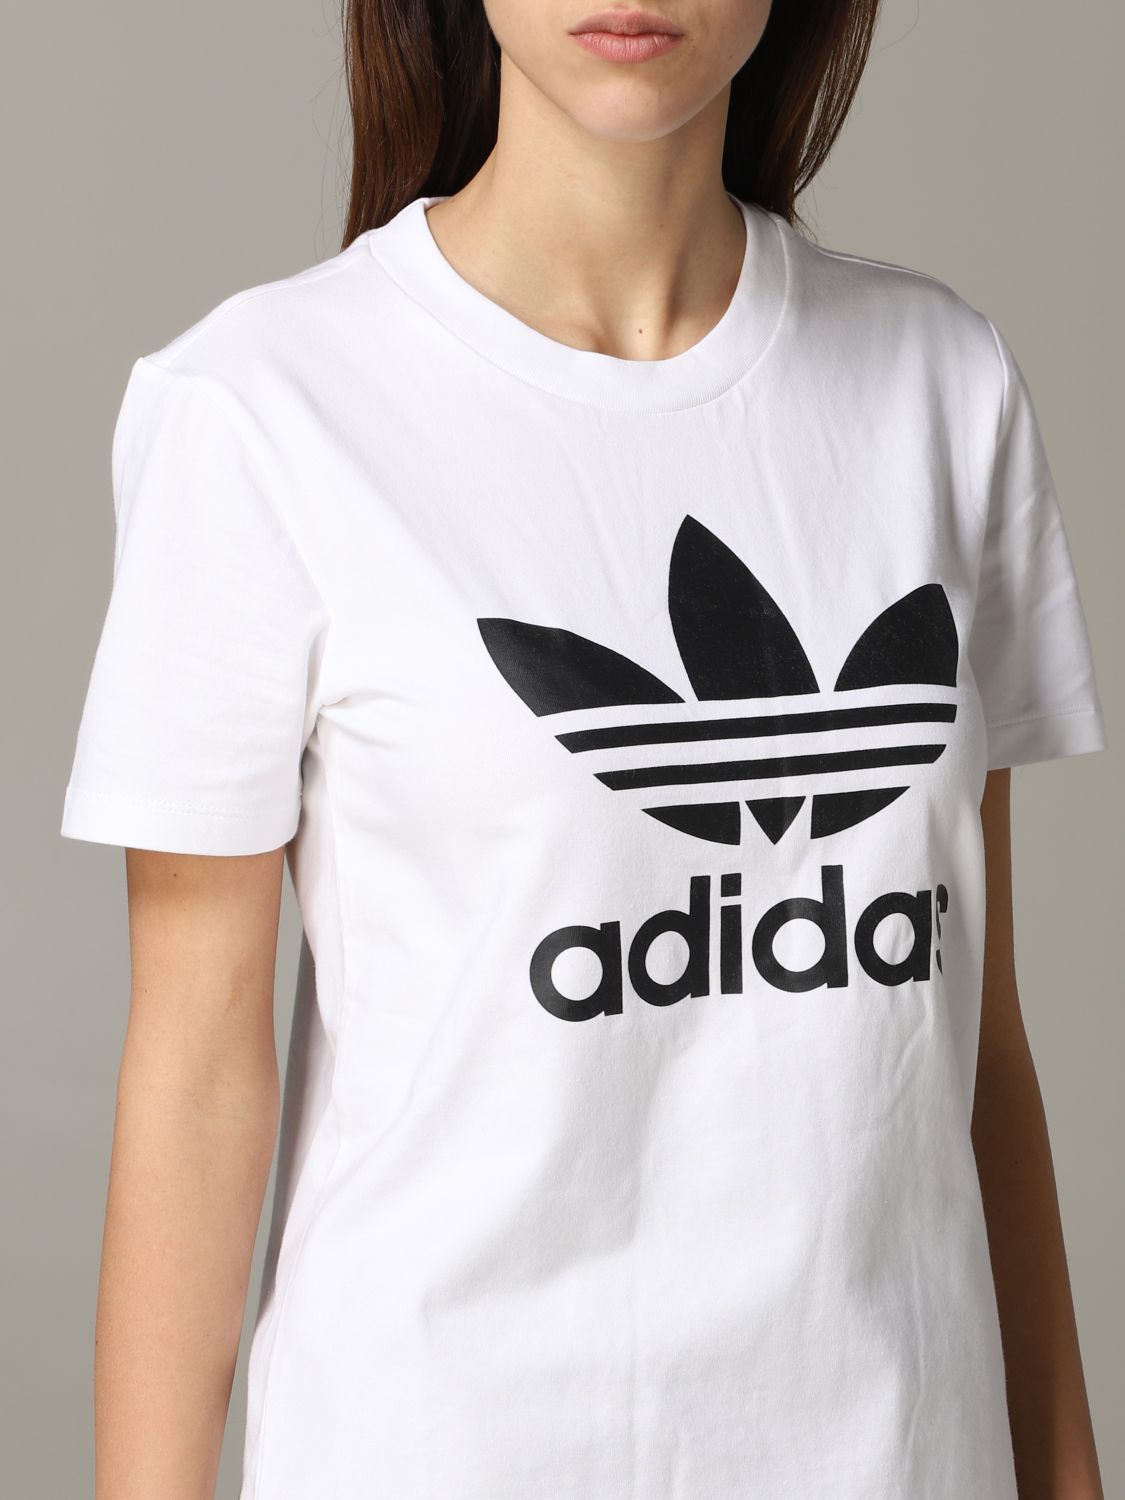 Adidas Originals Outlet: T-shirt with logo | T-Shirt Adidas Originals White | T-Shirt Adidas Originals FM3306 GIGLIO.COM